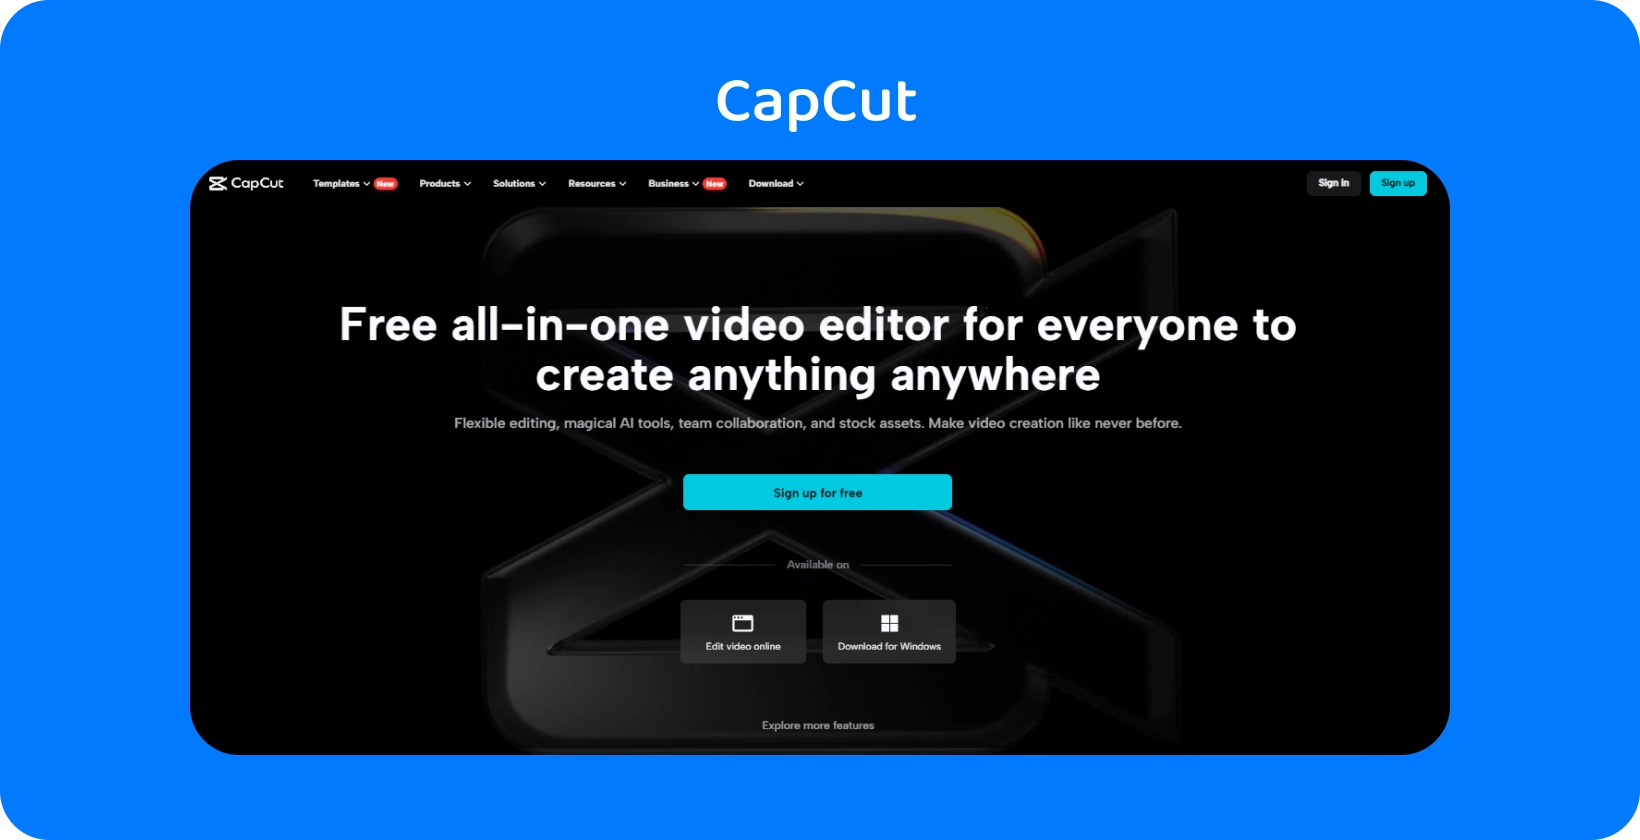 דף הבית של CapCut מציג עורך וידאו חינמי ומקיף ליצירת תוכן בכל מכשיר, עם עיצוב כהה ומלוטש.
